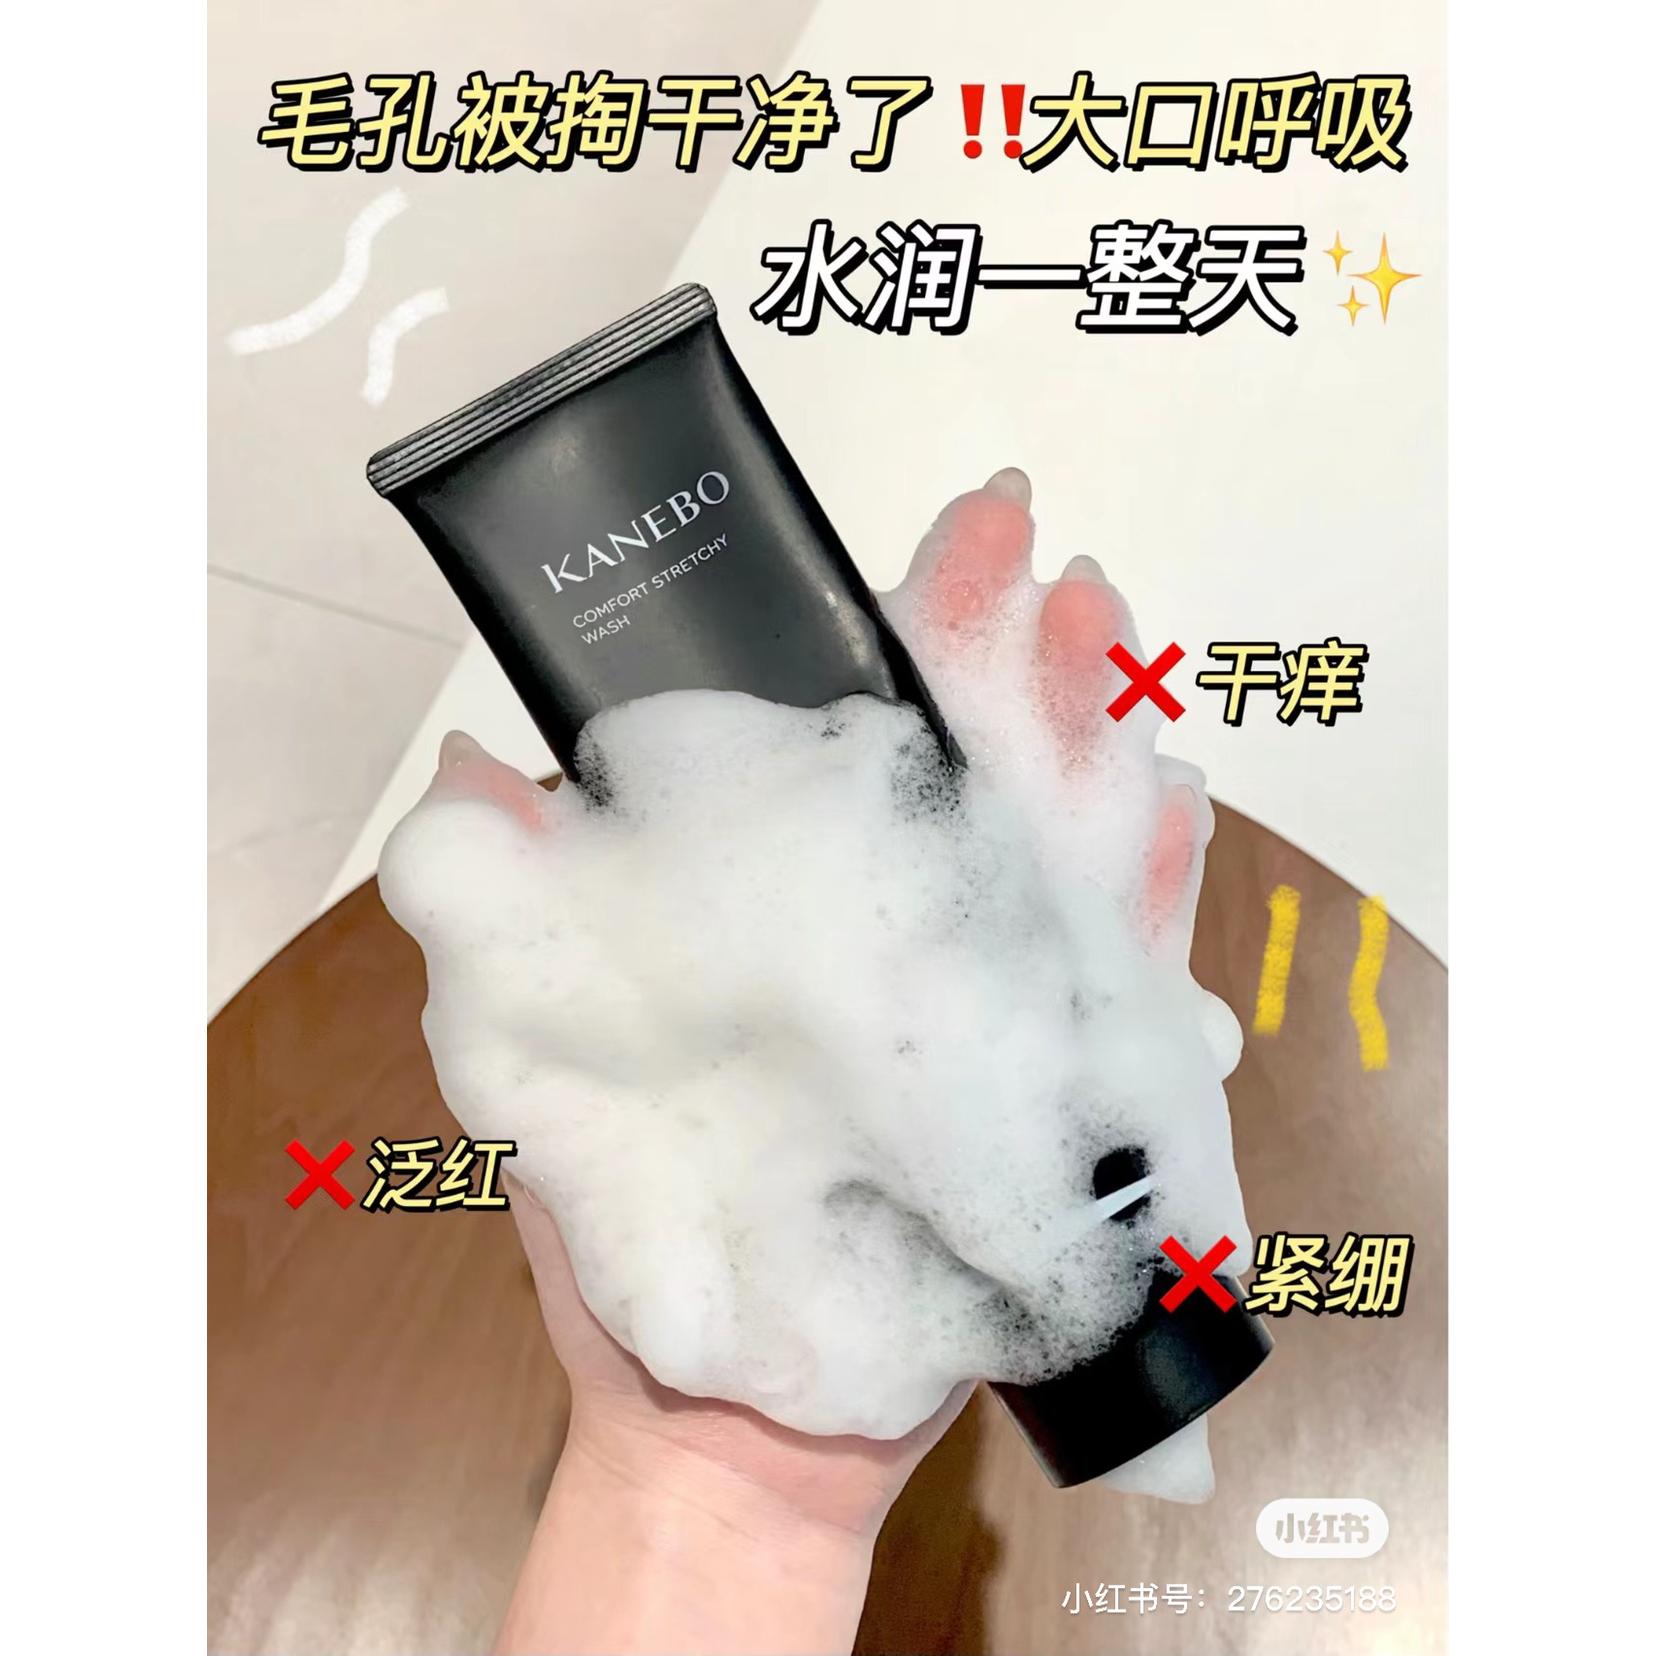 日本专柜KANEBO/嘉娜宝普通版拉丝清爽款顺滑泡沫洁面洗面奶130g